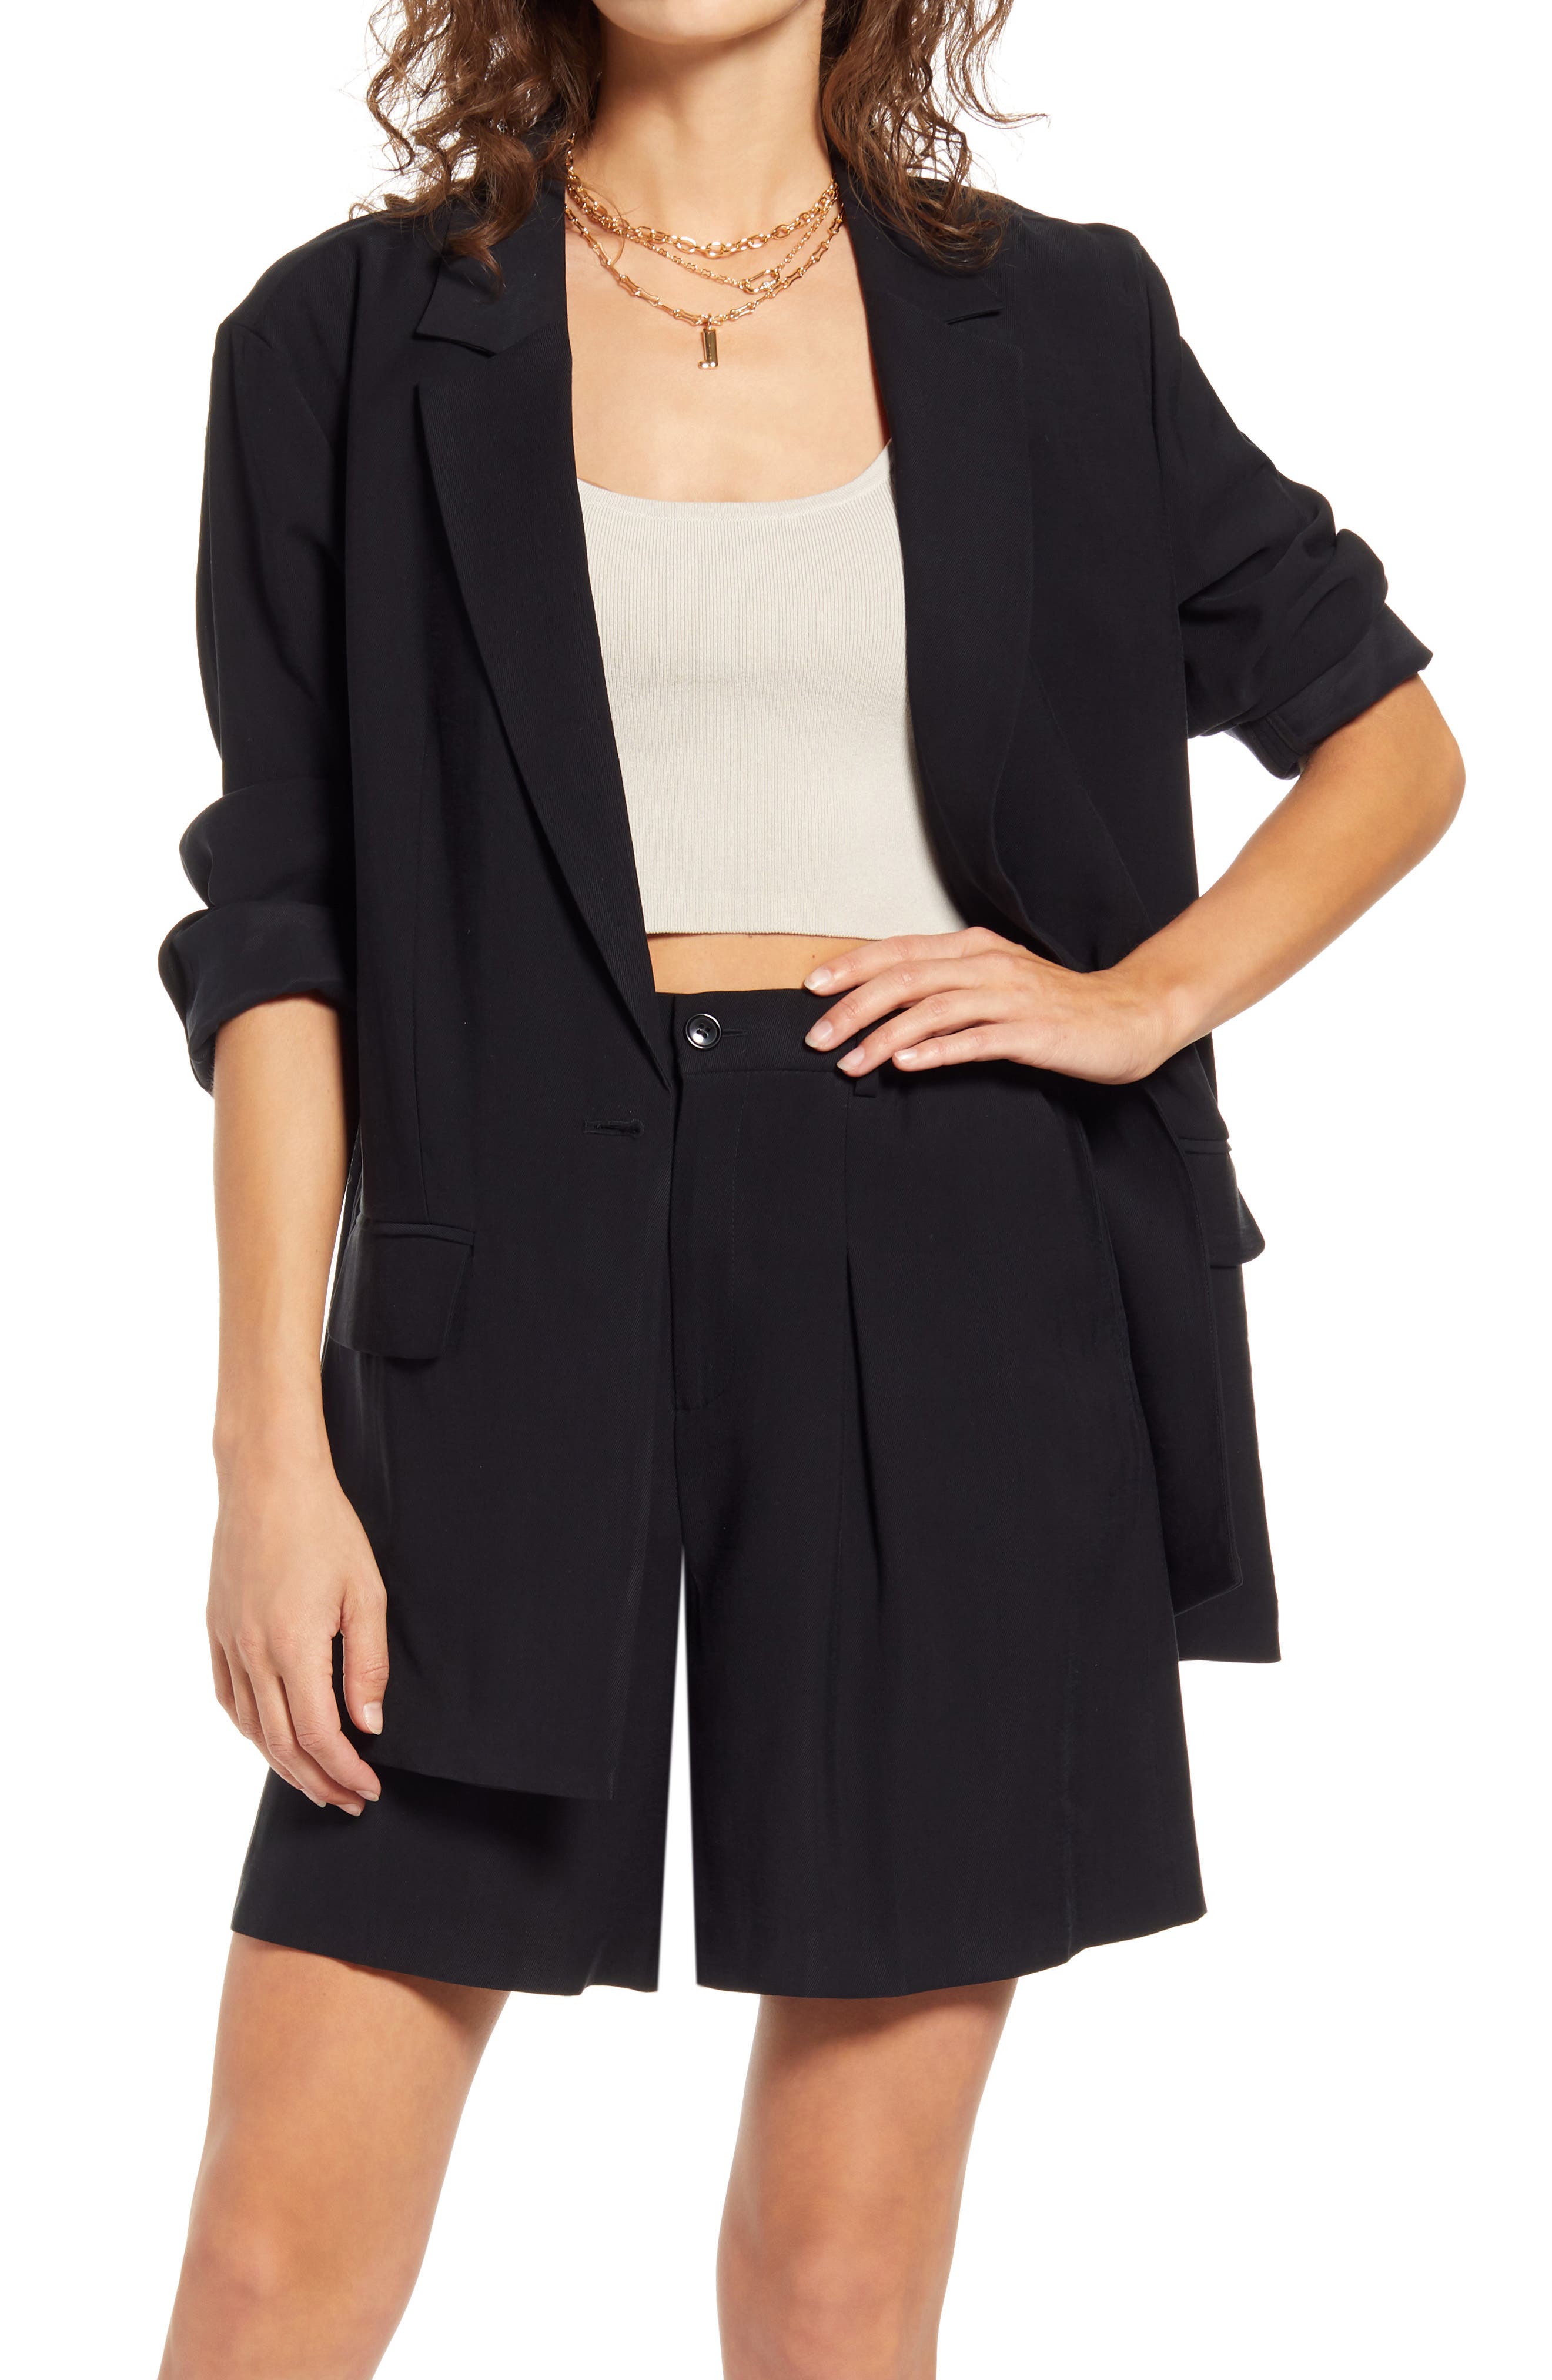 Women's Coats ☀ Jackets | Nordstrom